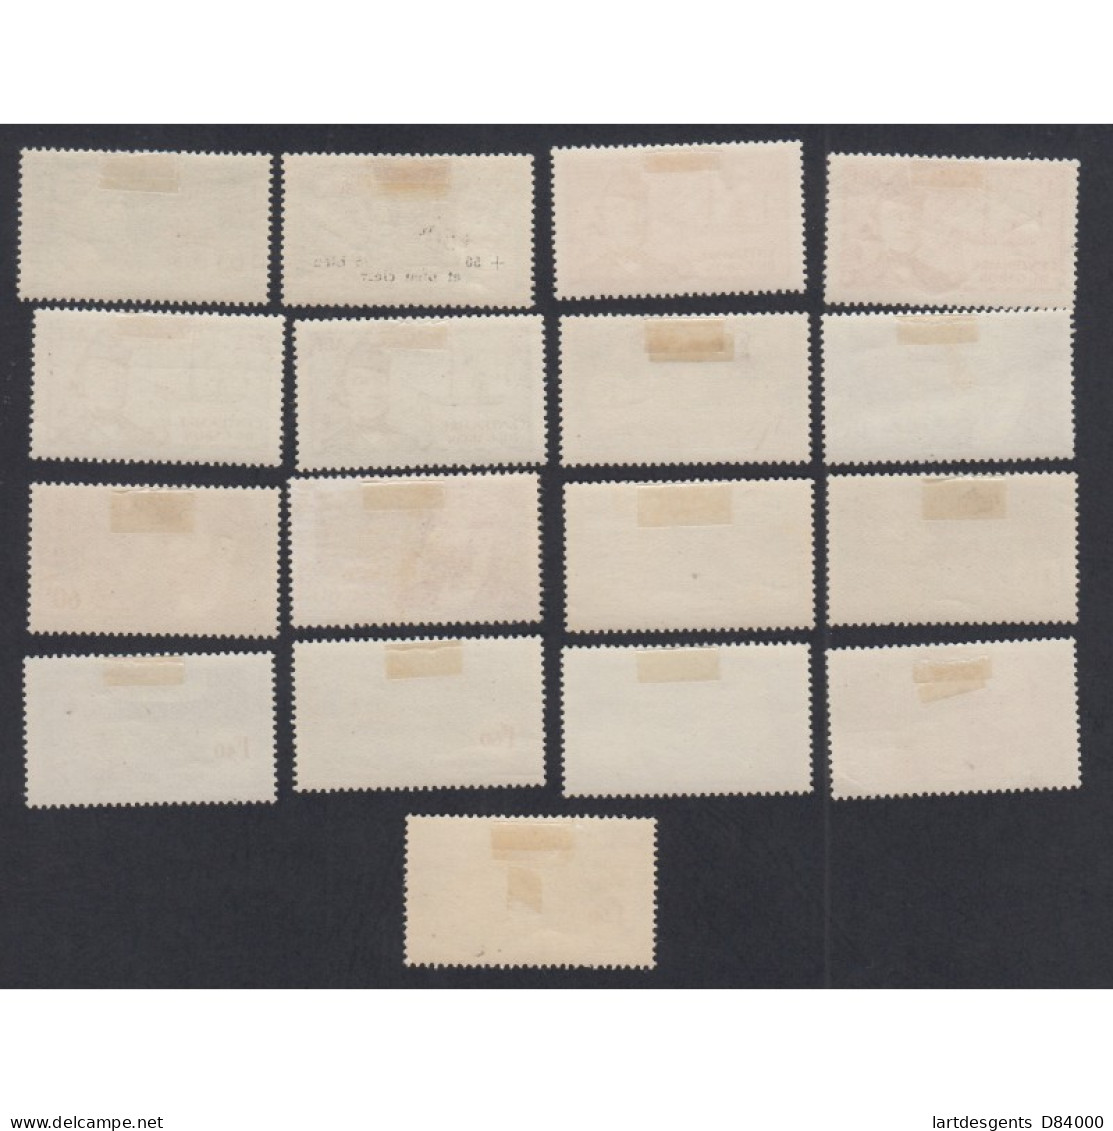 Colonies Série De 17 Timbres Avec Variétés AEF 1938-40, N°64 à 86 Neufs* Lartdesgents - Lettres & Documents